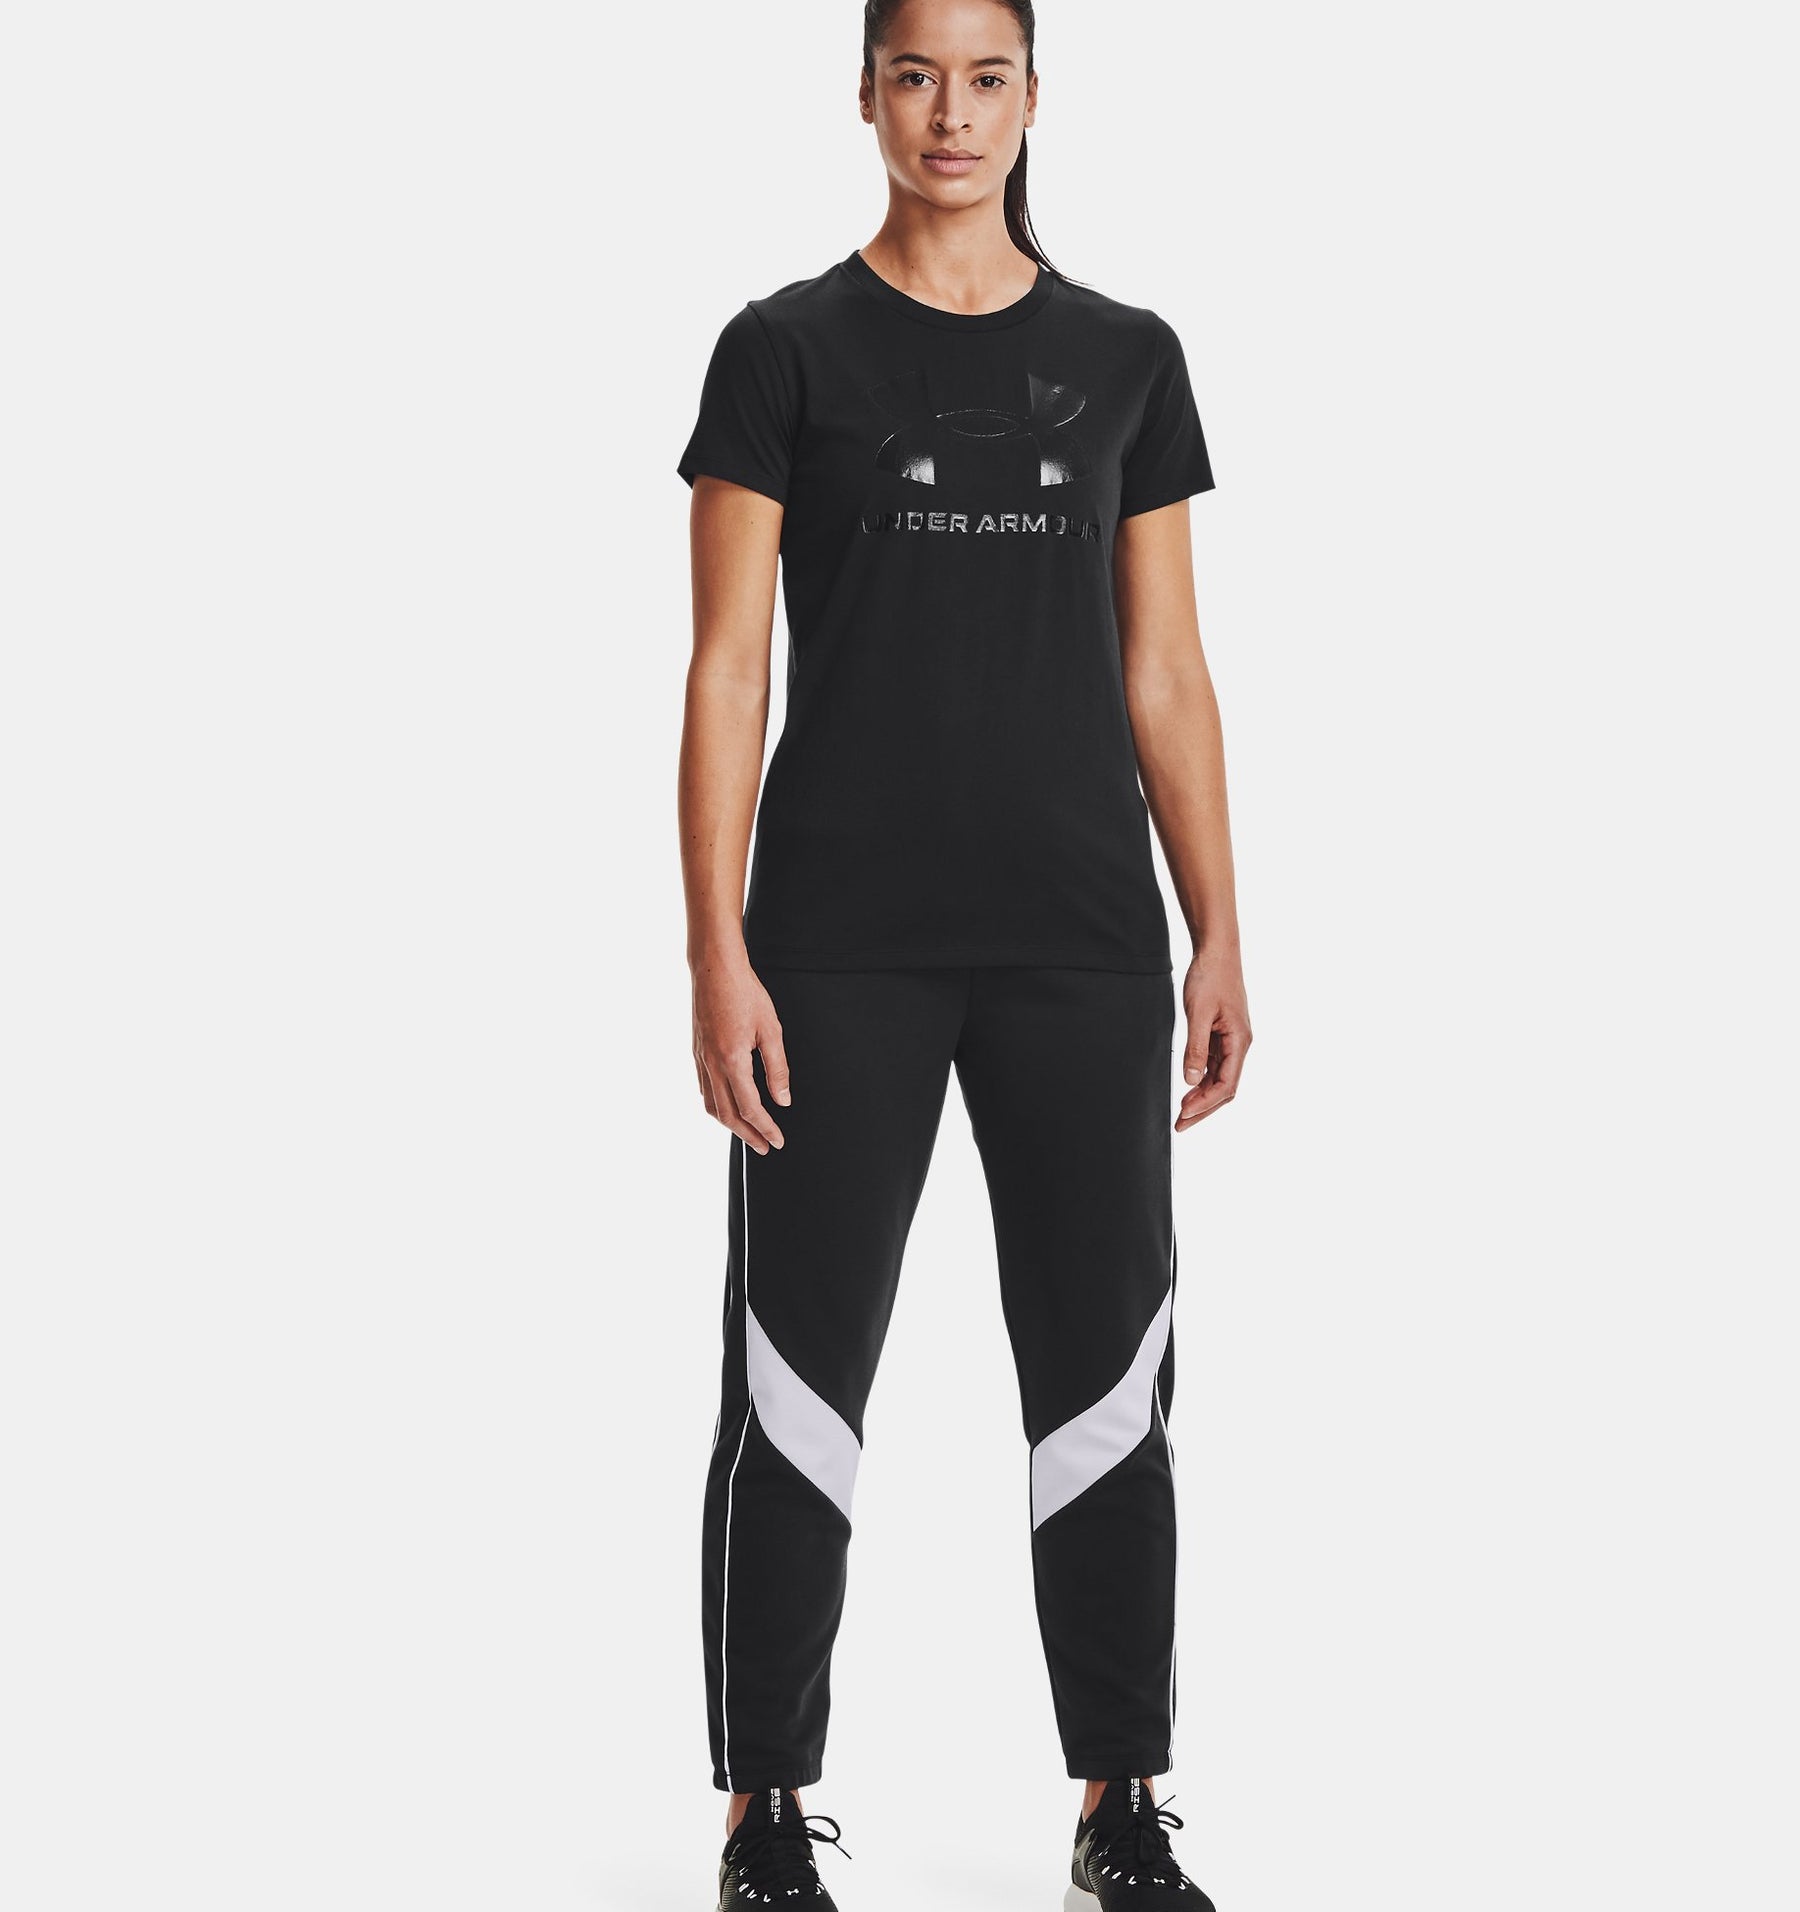 Under Armour Sportstyle Graphic - T-Shirt Da Running Donna - Neverland Firenze